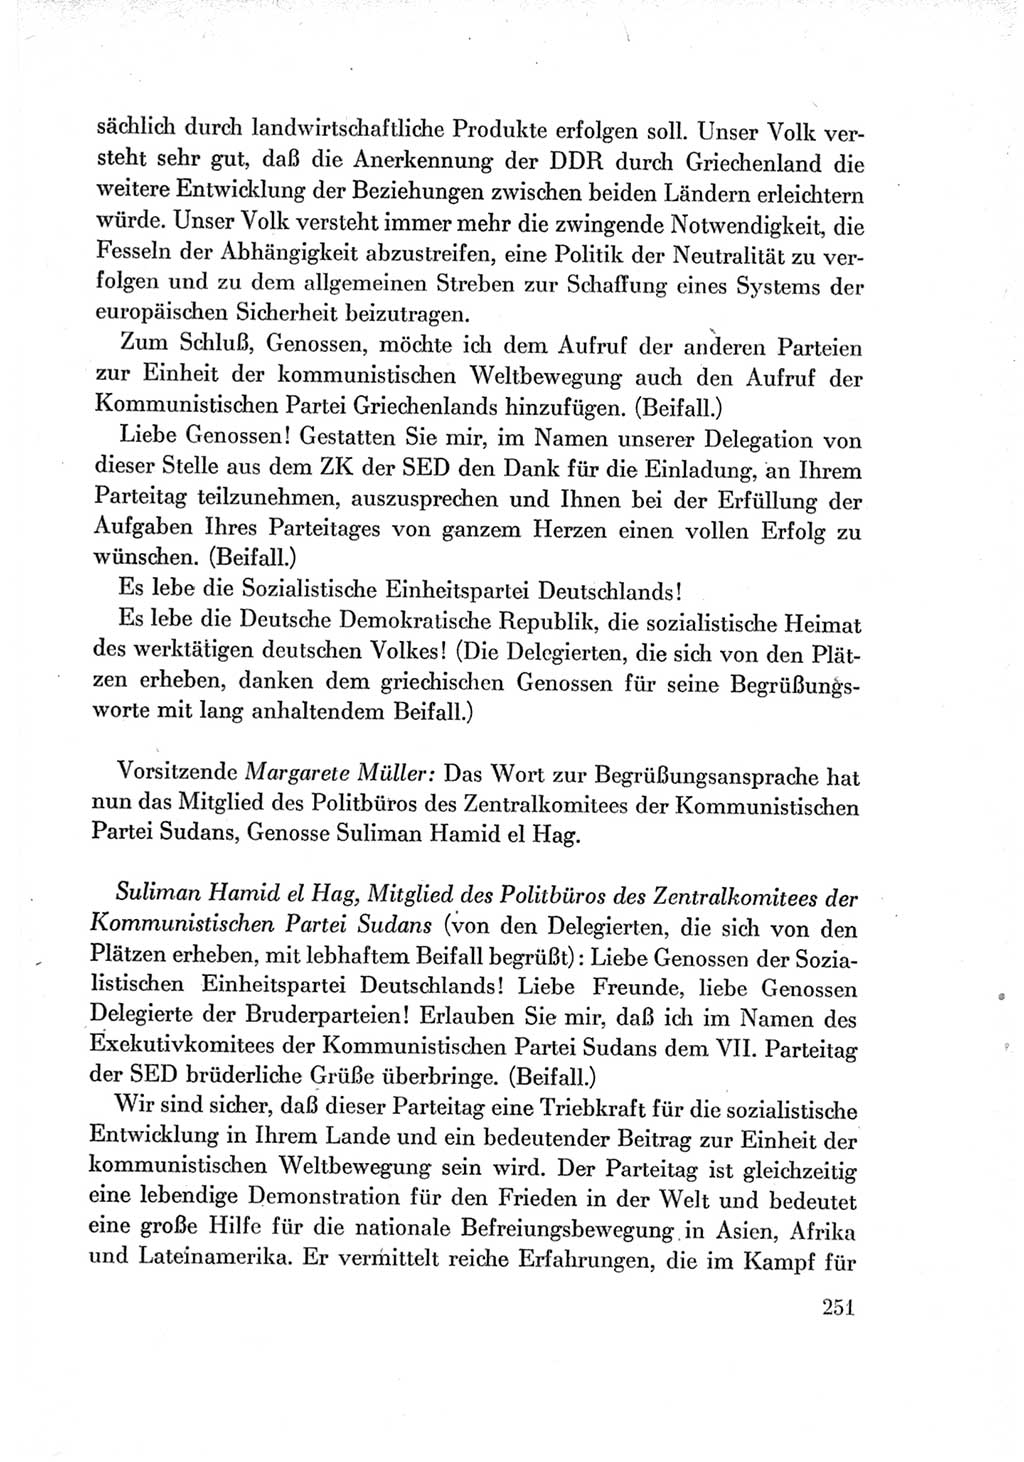 Protokoll der Verhandlungen des Ⅶ. Parteitages der Sozialistischen Einheitspartei Deutschlands (SED) [Deutsche Demokratische Republik (DDR)] 1967, Band Ⅱ, Seite 251 (Prot. Verh. Ⅶ. PT SED DDR 1967, Bd. Ⅱ, S. 251)